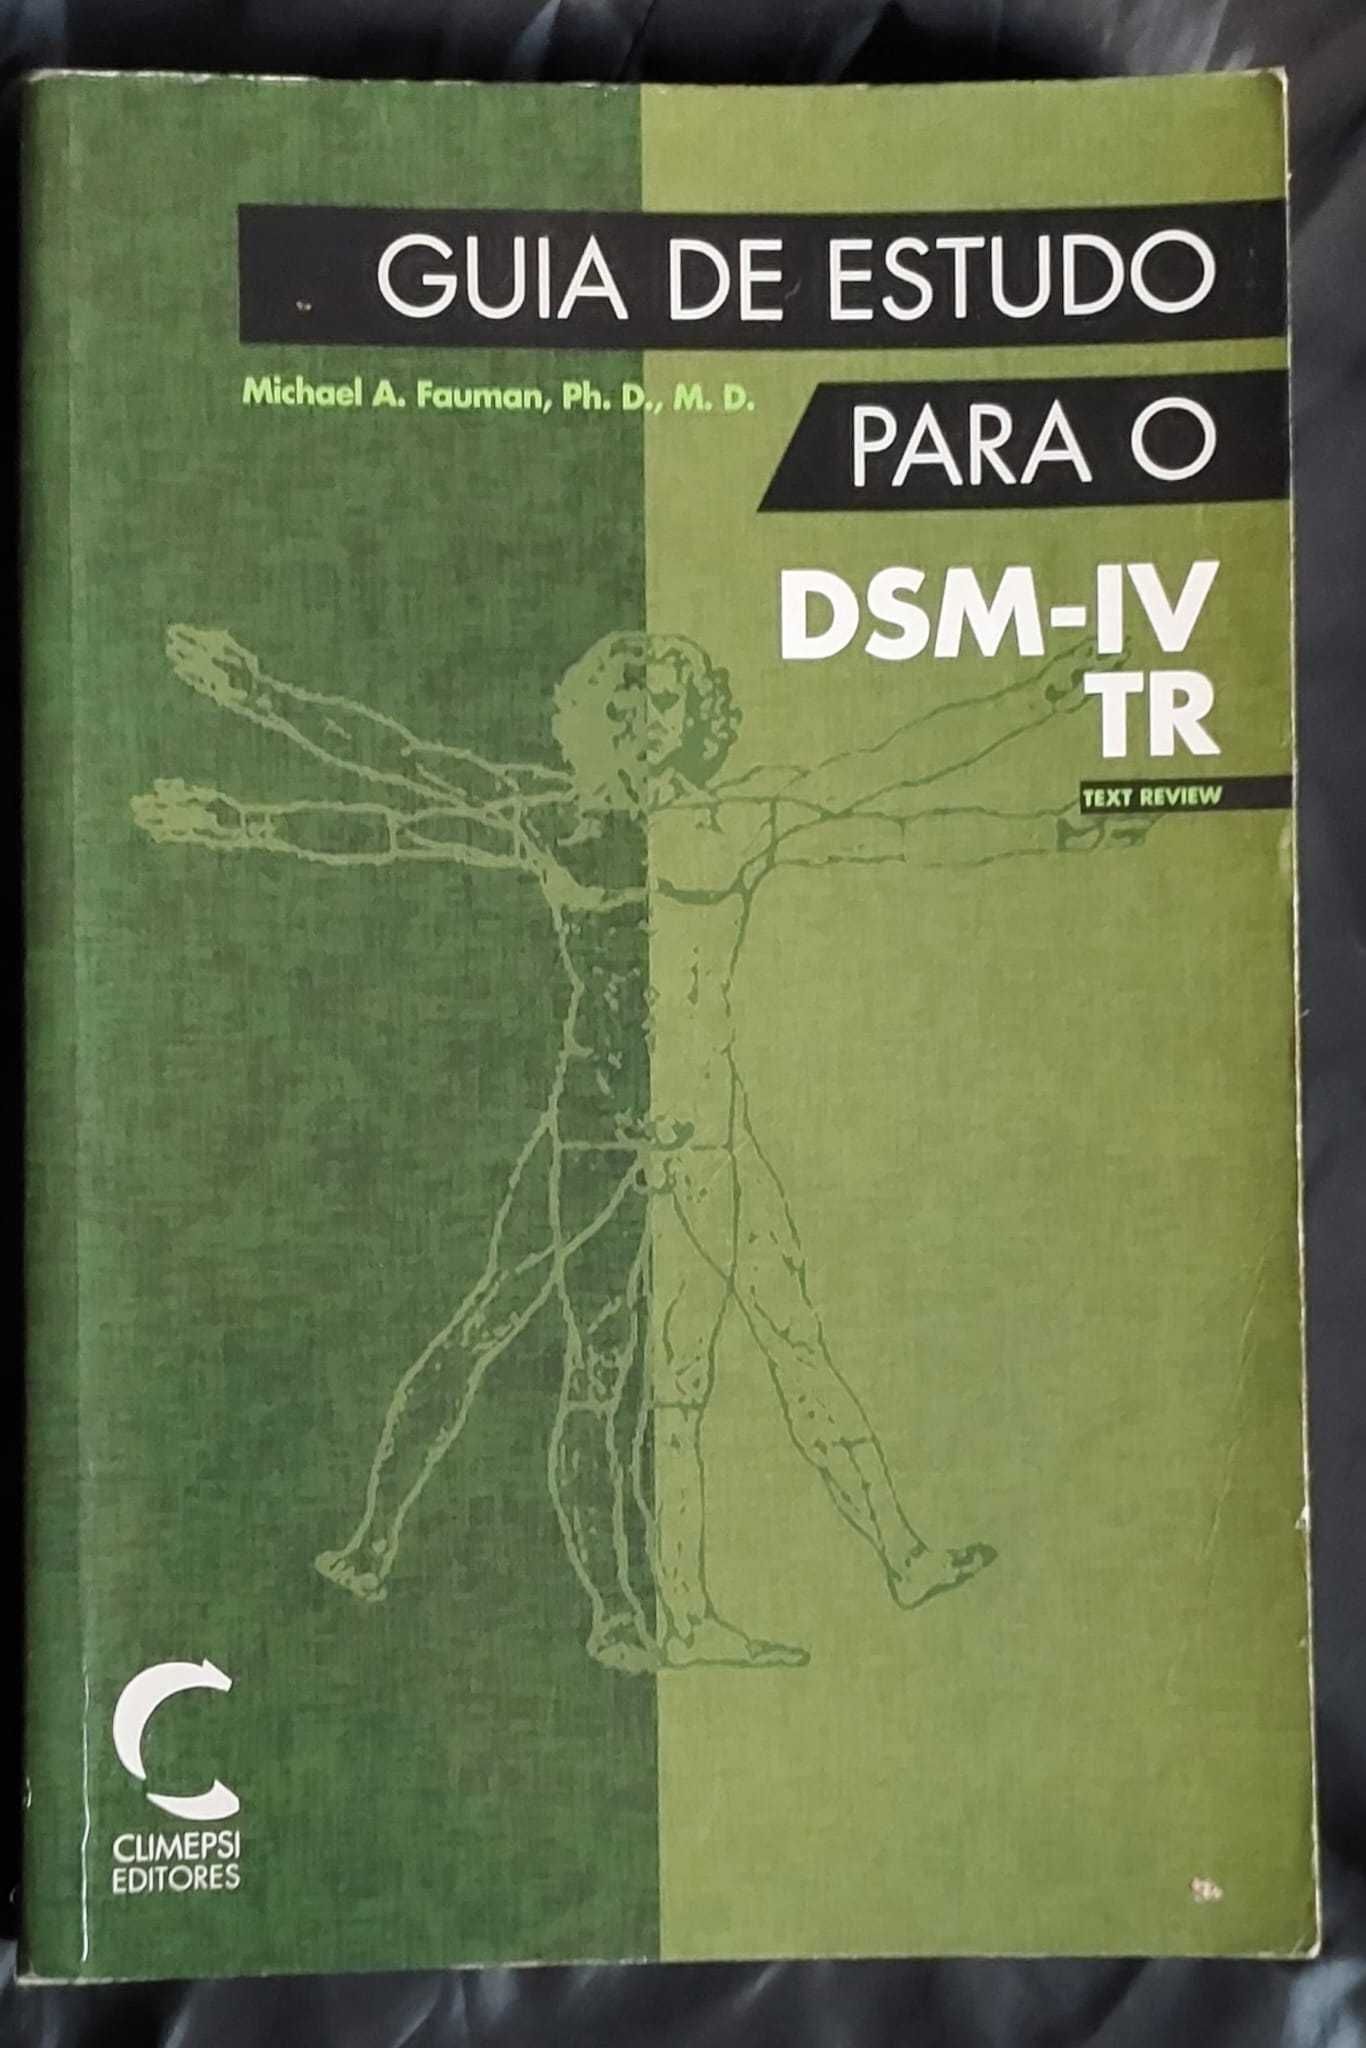 Portes Incluídos  "Guia de Estudo para o DSM-IV TR"  Michael A. Fauman